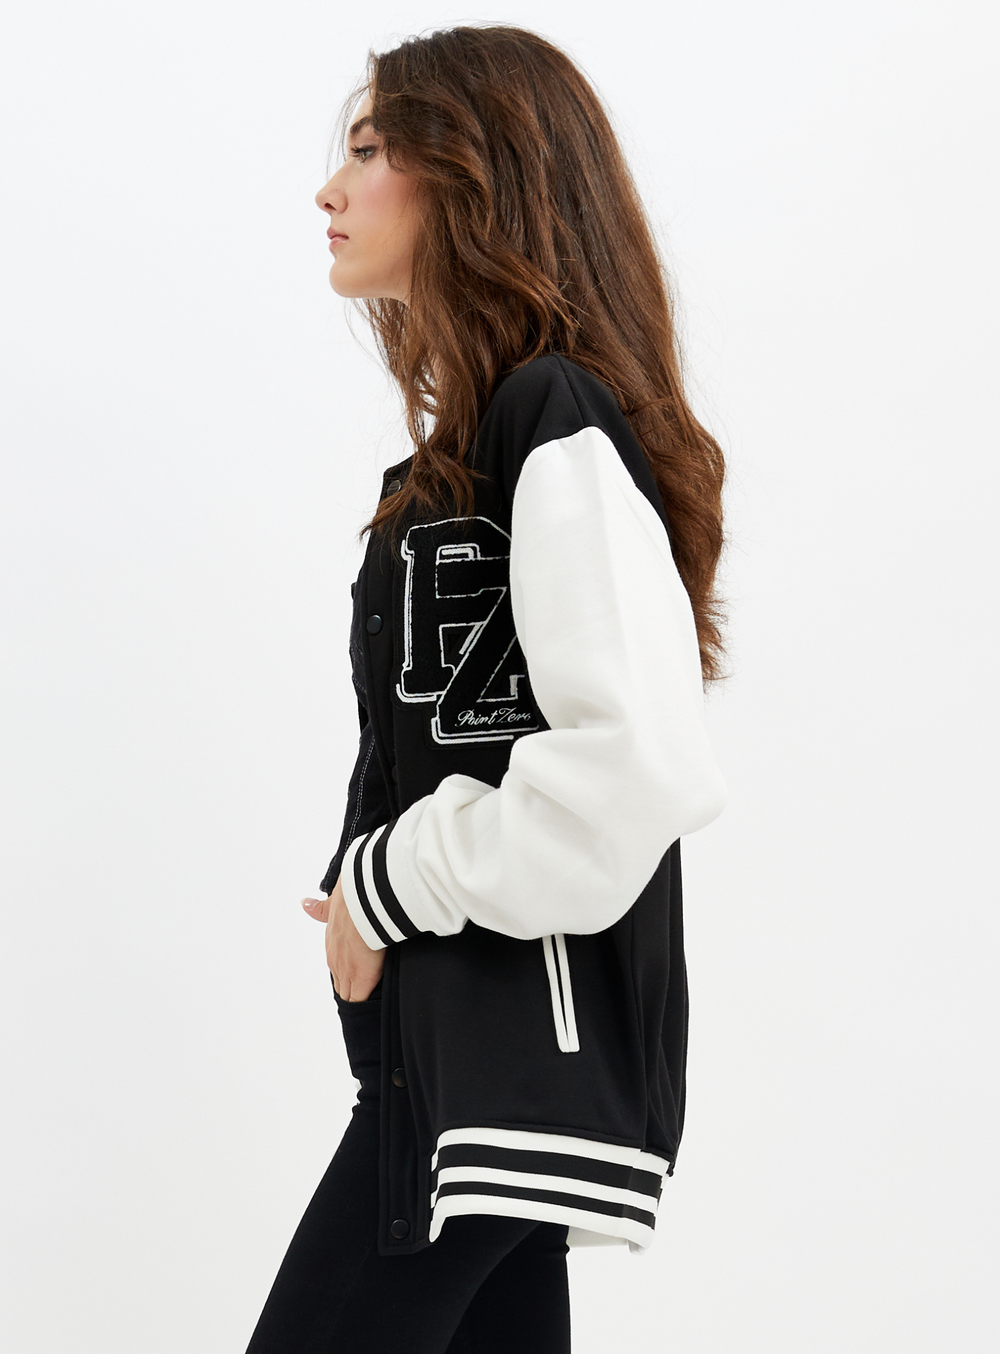 YORKDALE | Unisex limited edition varsity fleece jacket || YORKDALE | Veste  polaire universitaire unisexe en édition limitée